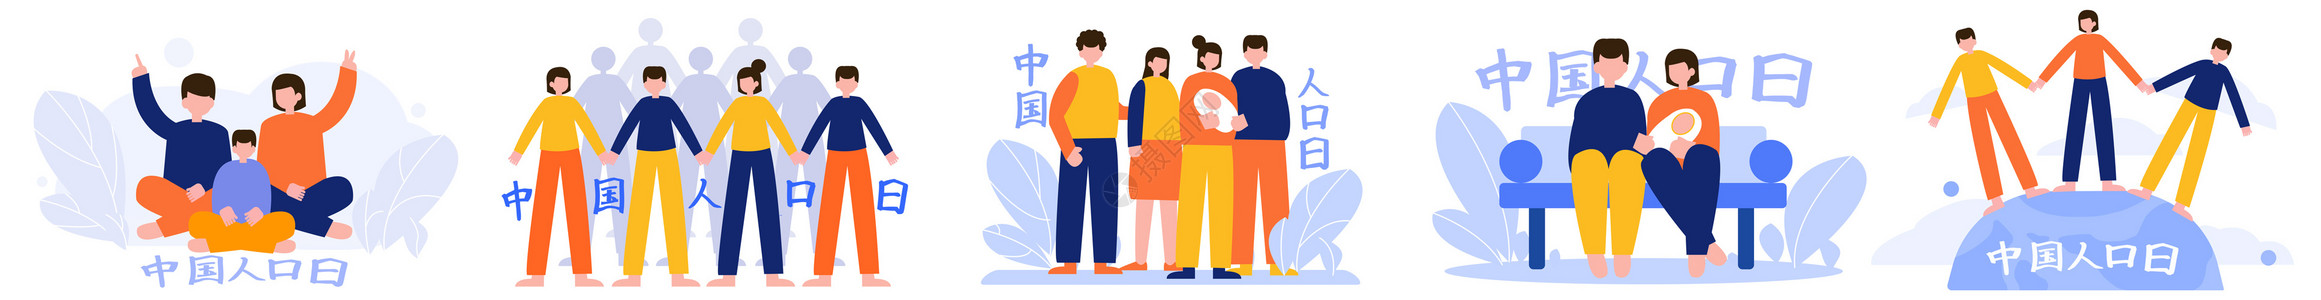 大众创新中国人口日社会家庭多人人物场景插图插画